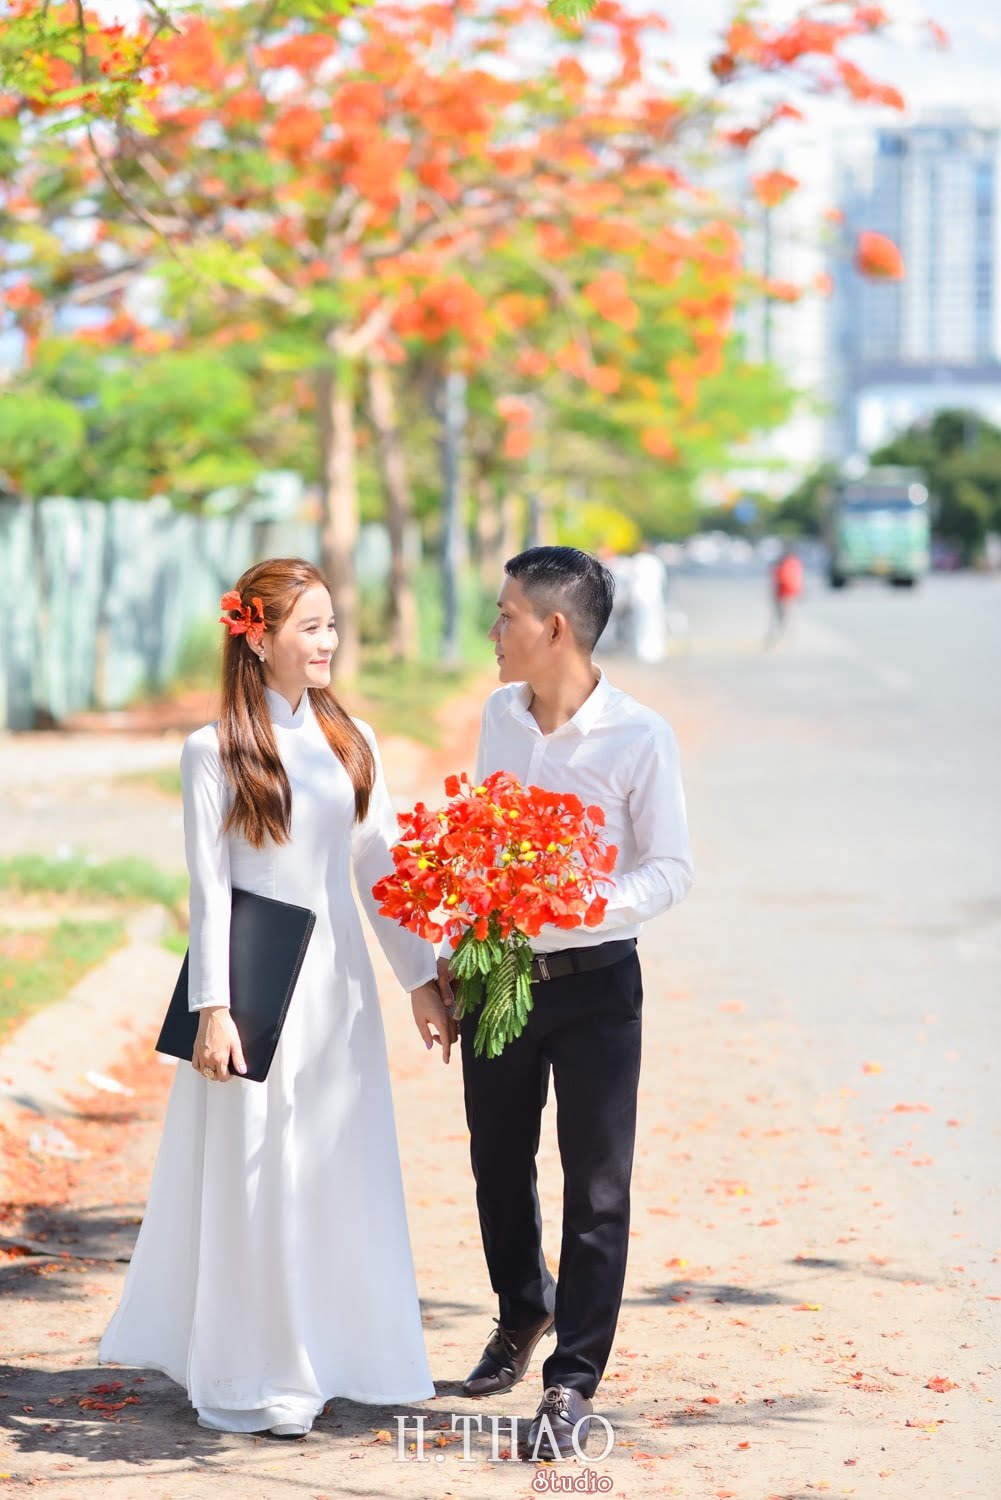 Anh hoa phuong 15 min - Bộ ảnh couple chụp với hoa phượng tuyệt đẹp - HThao Studio